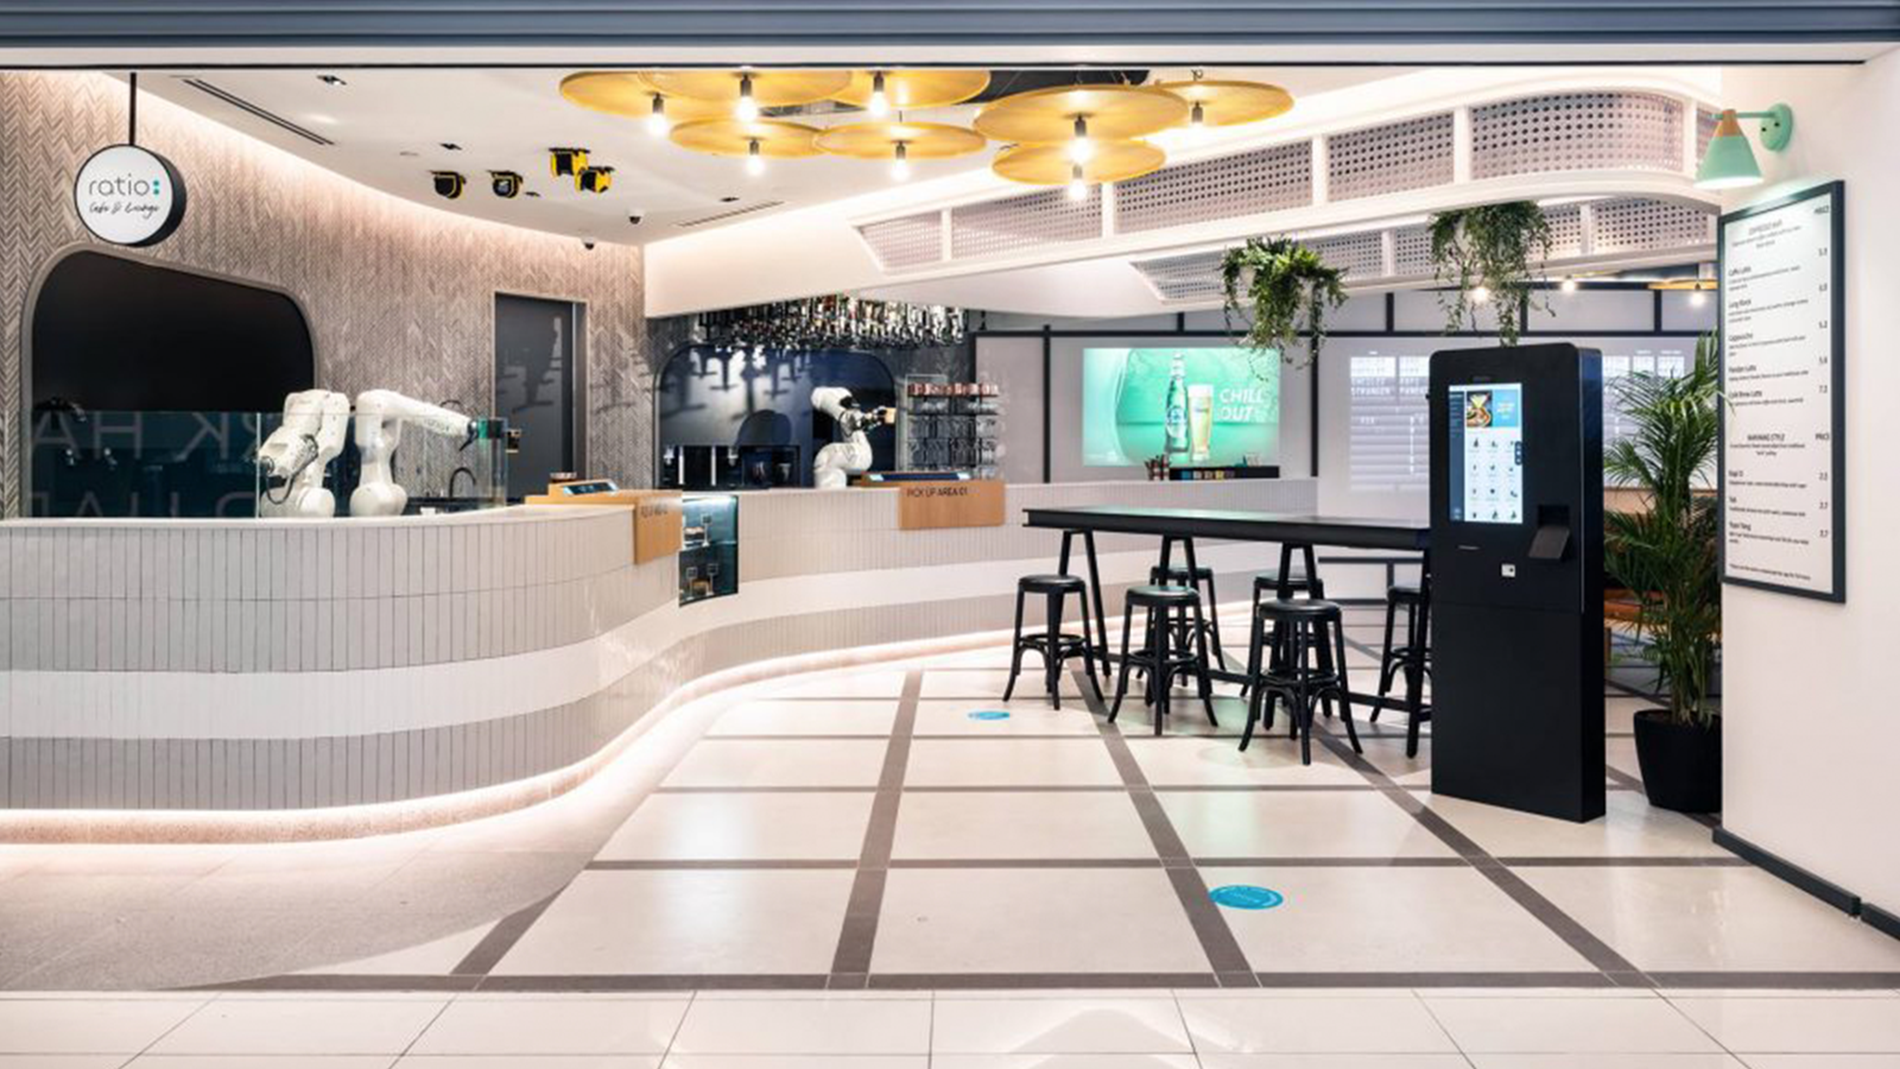 Das weltweit erste Roboter-Café mit Lounge auf KUKA Roboter